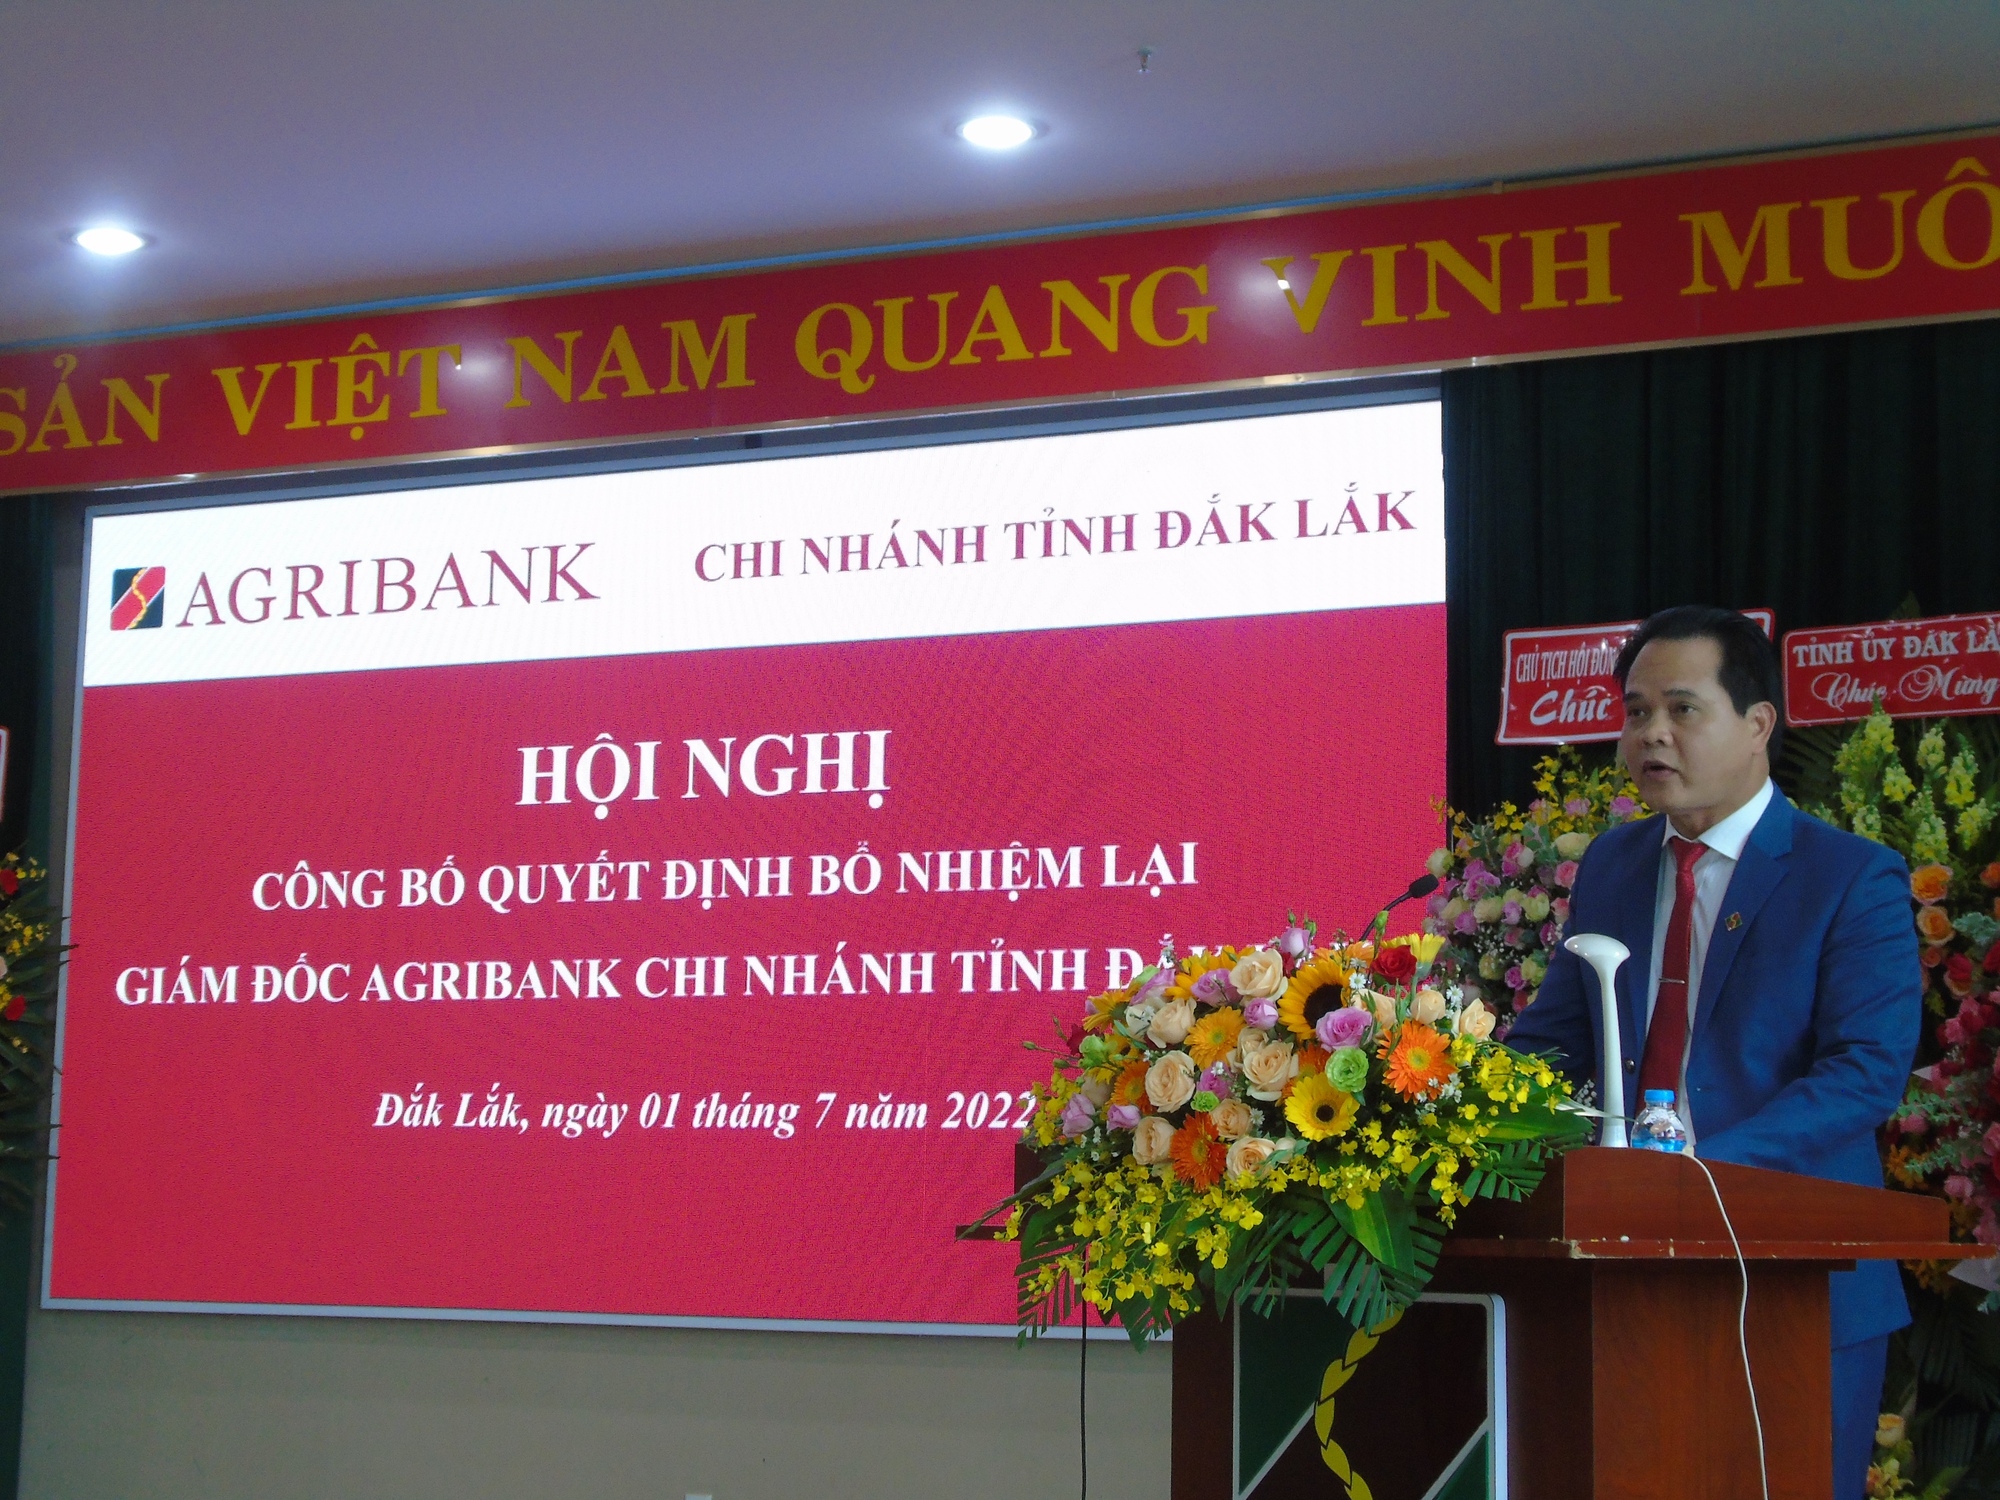 Ông Vương Hồng Lĩnh được bổ nhiệm lại chức vụ Giám đốc Agribank Chi nhánh tỉnh Đắk Lắk - Ảnh 2.